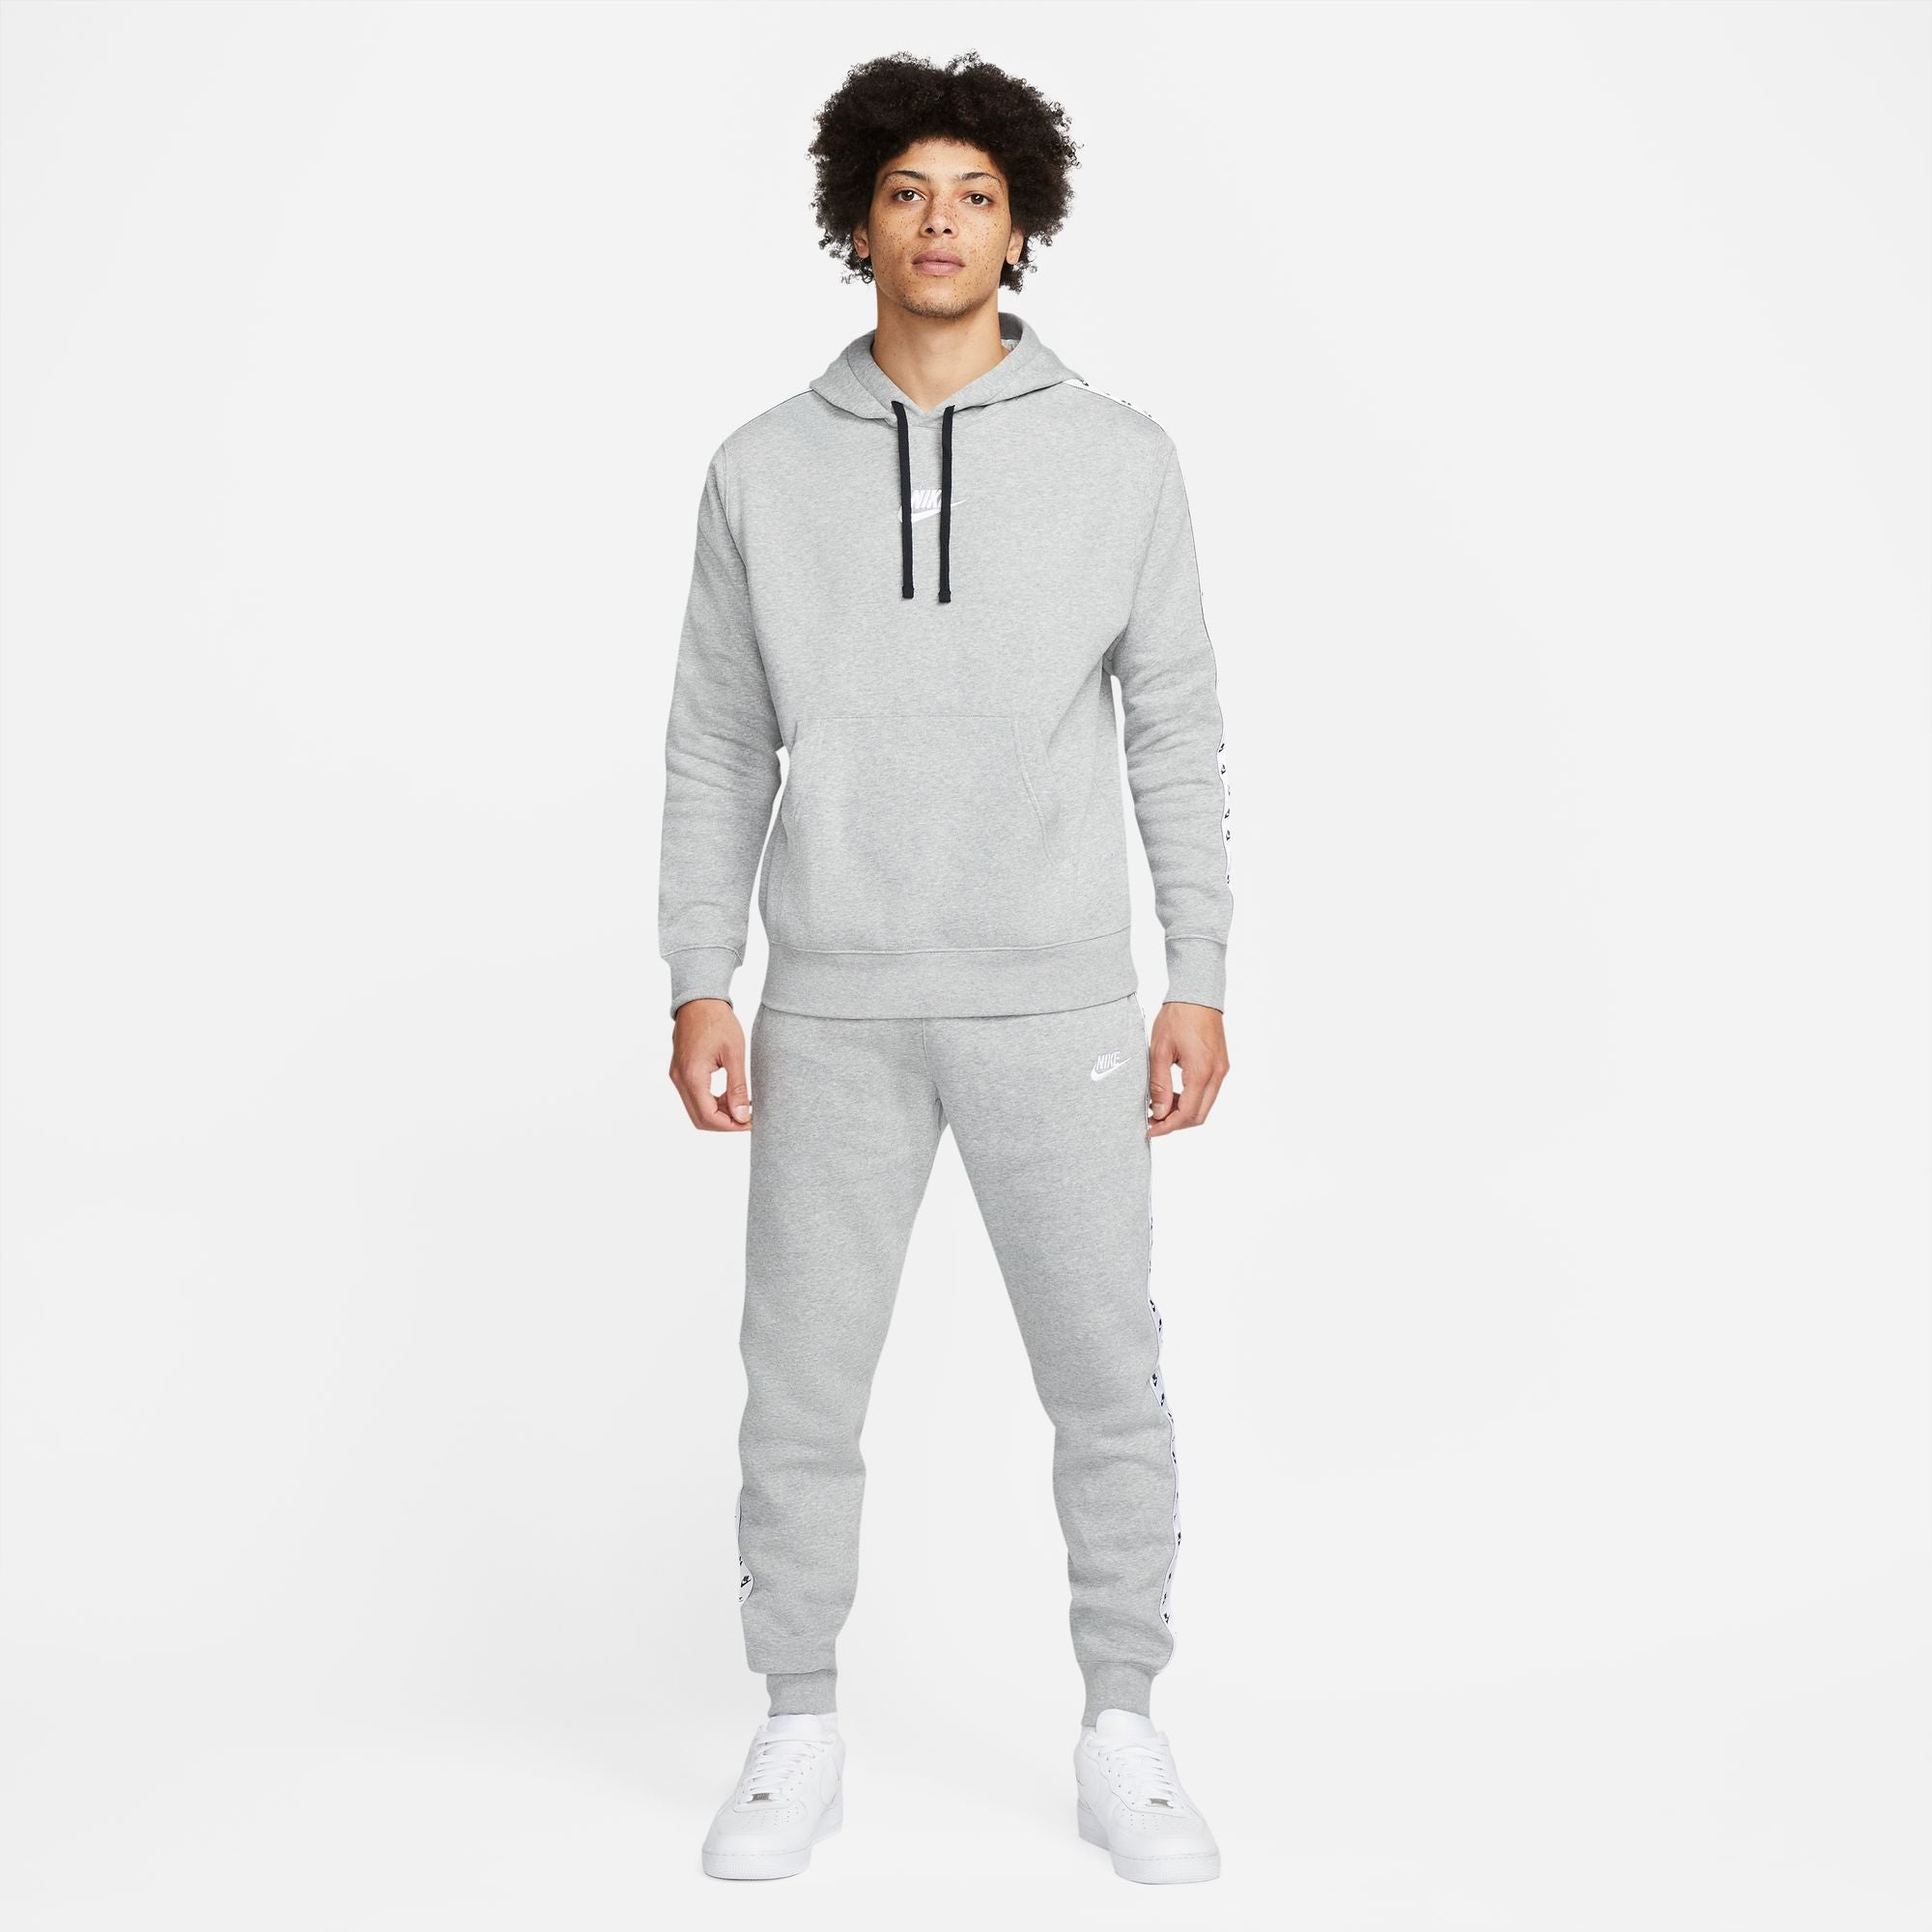 Tuta sportiva Nike Sportswear Essential - grigia/bianca